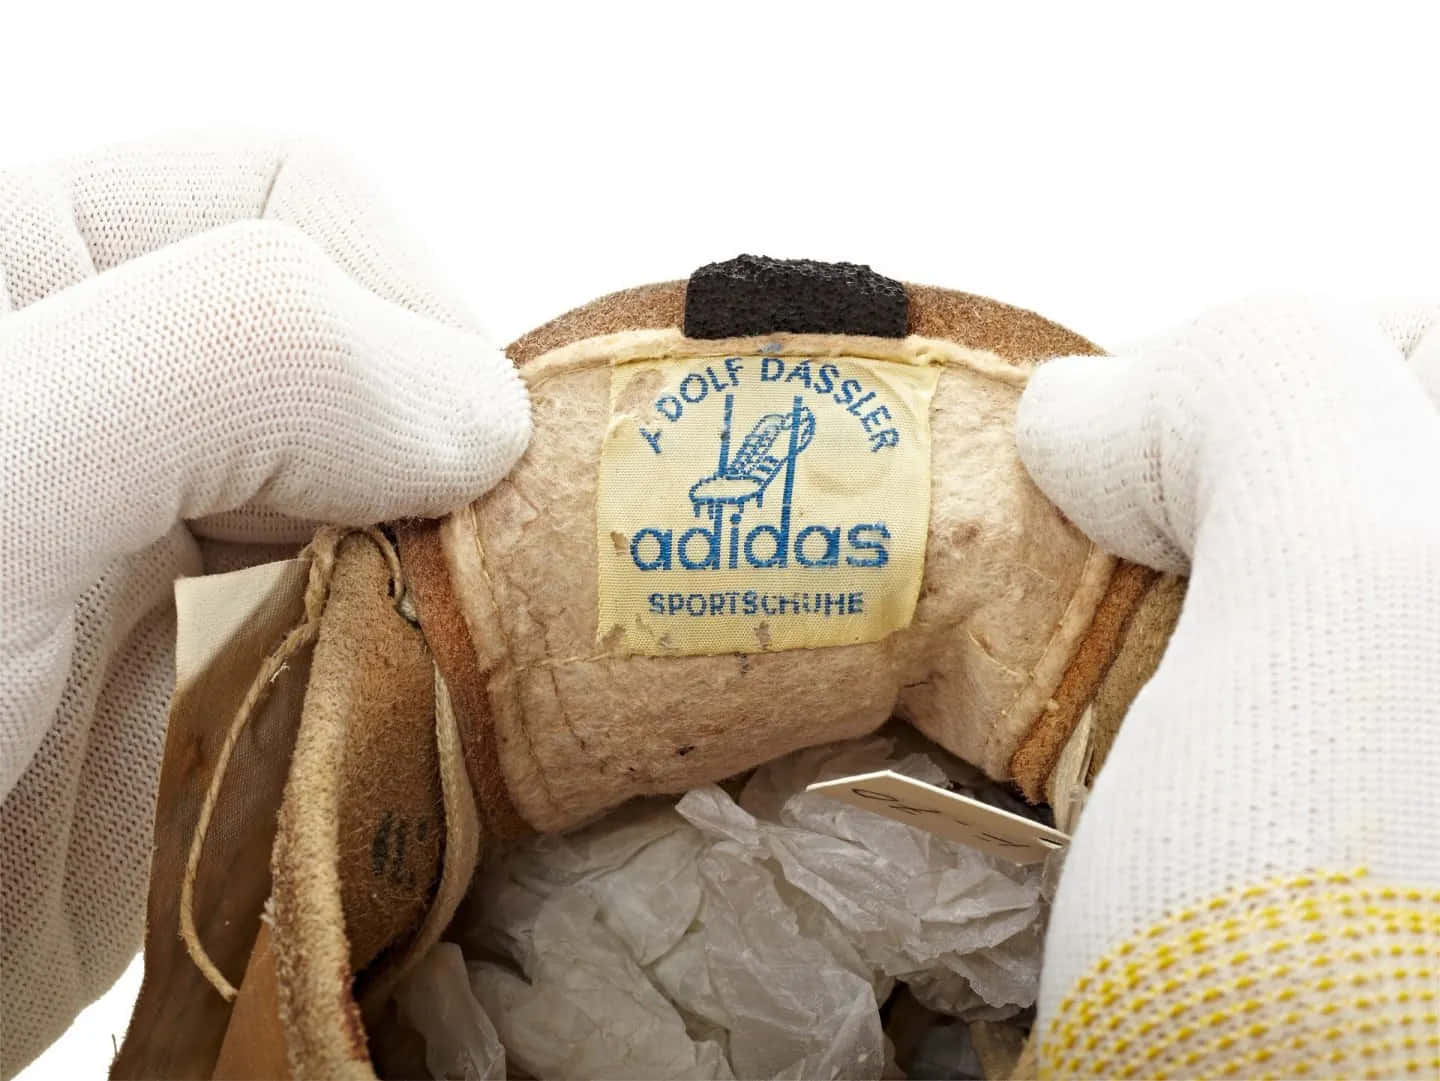 Strukturiertund Dennoch Stylisch, Willkommen In Der Welt Von Adidas.